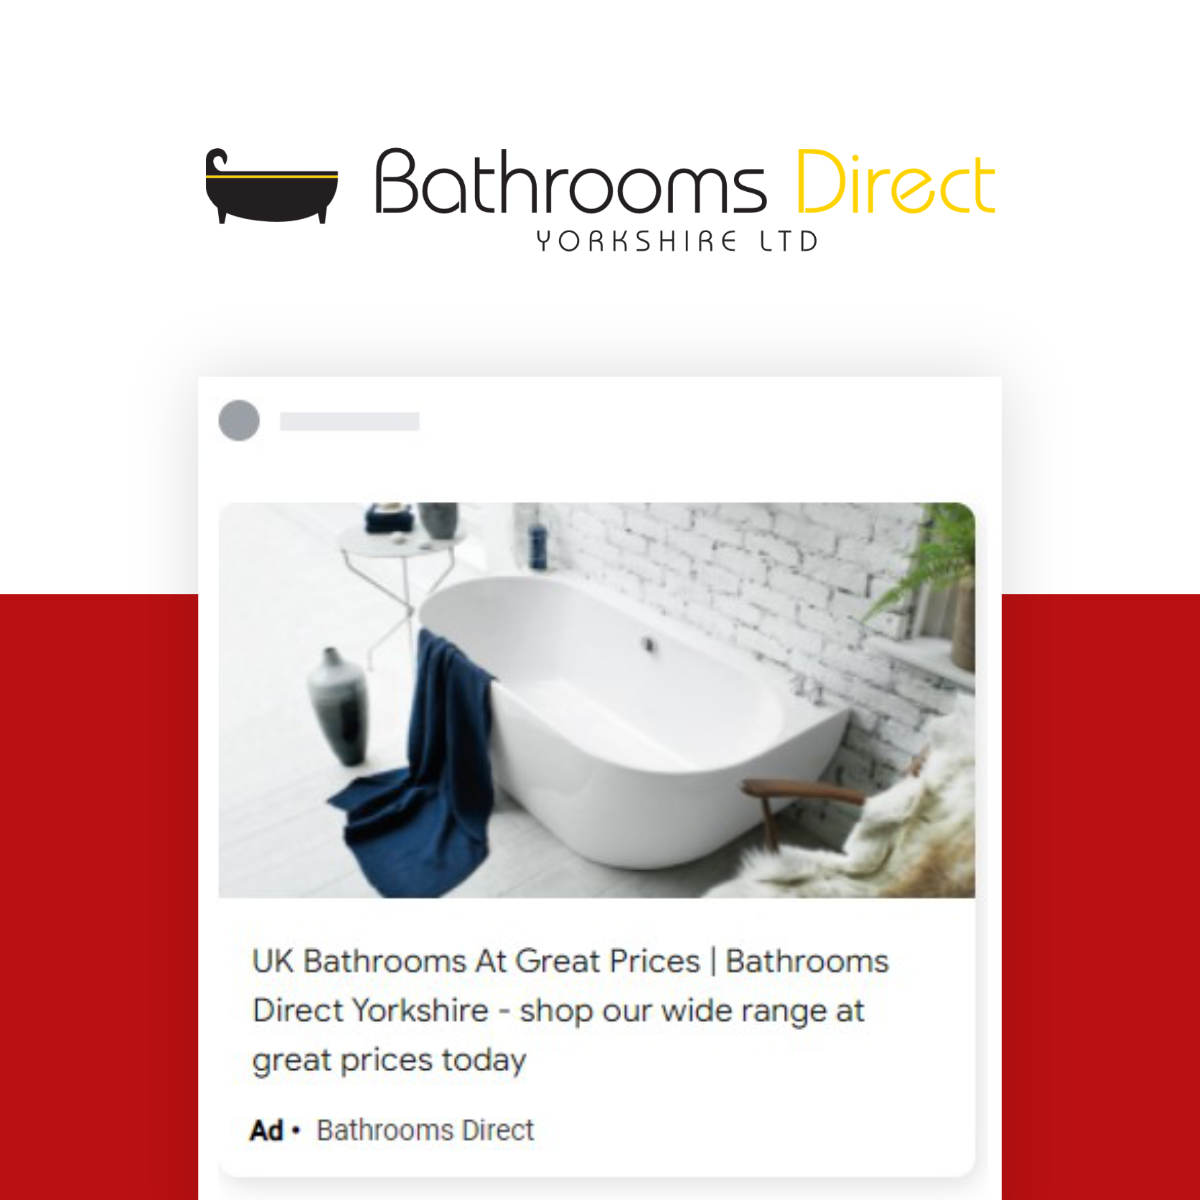 Bathrooms Direct: PPC & SEO